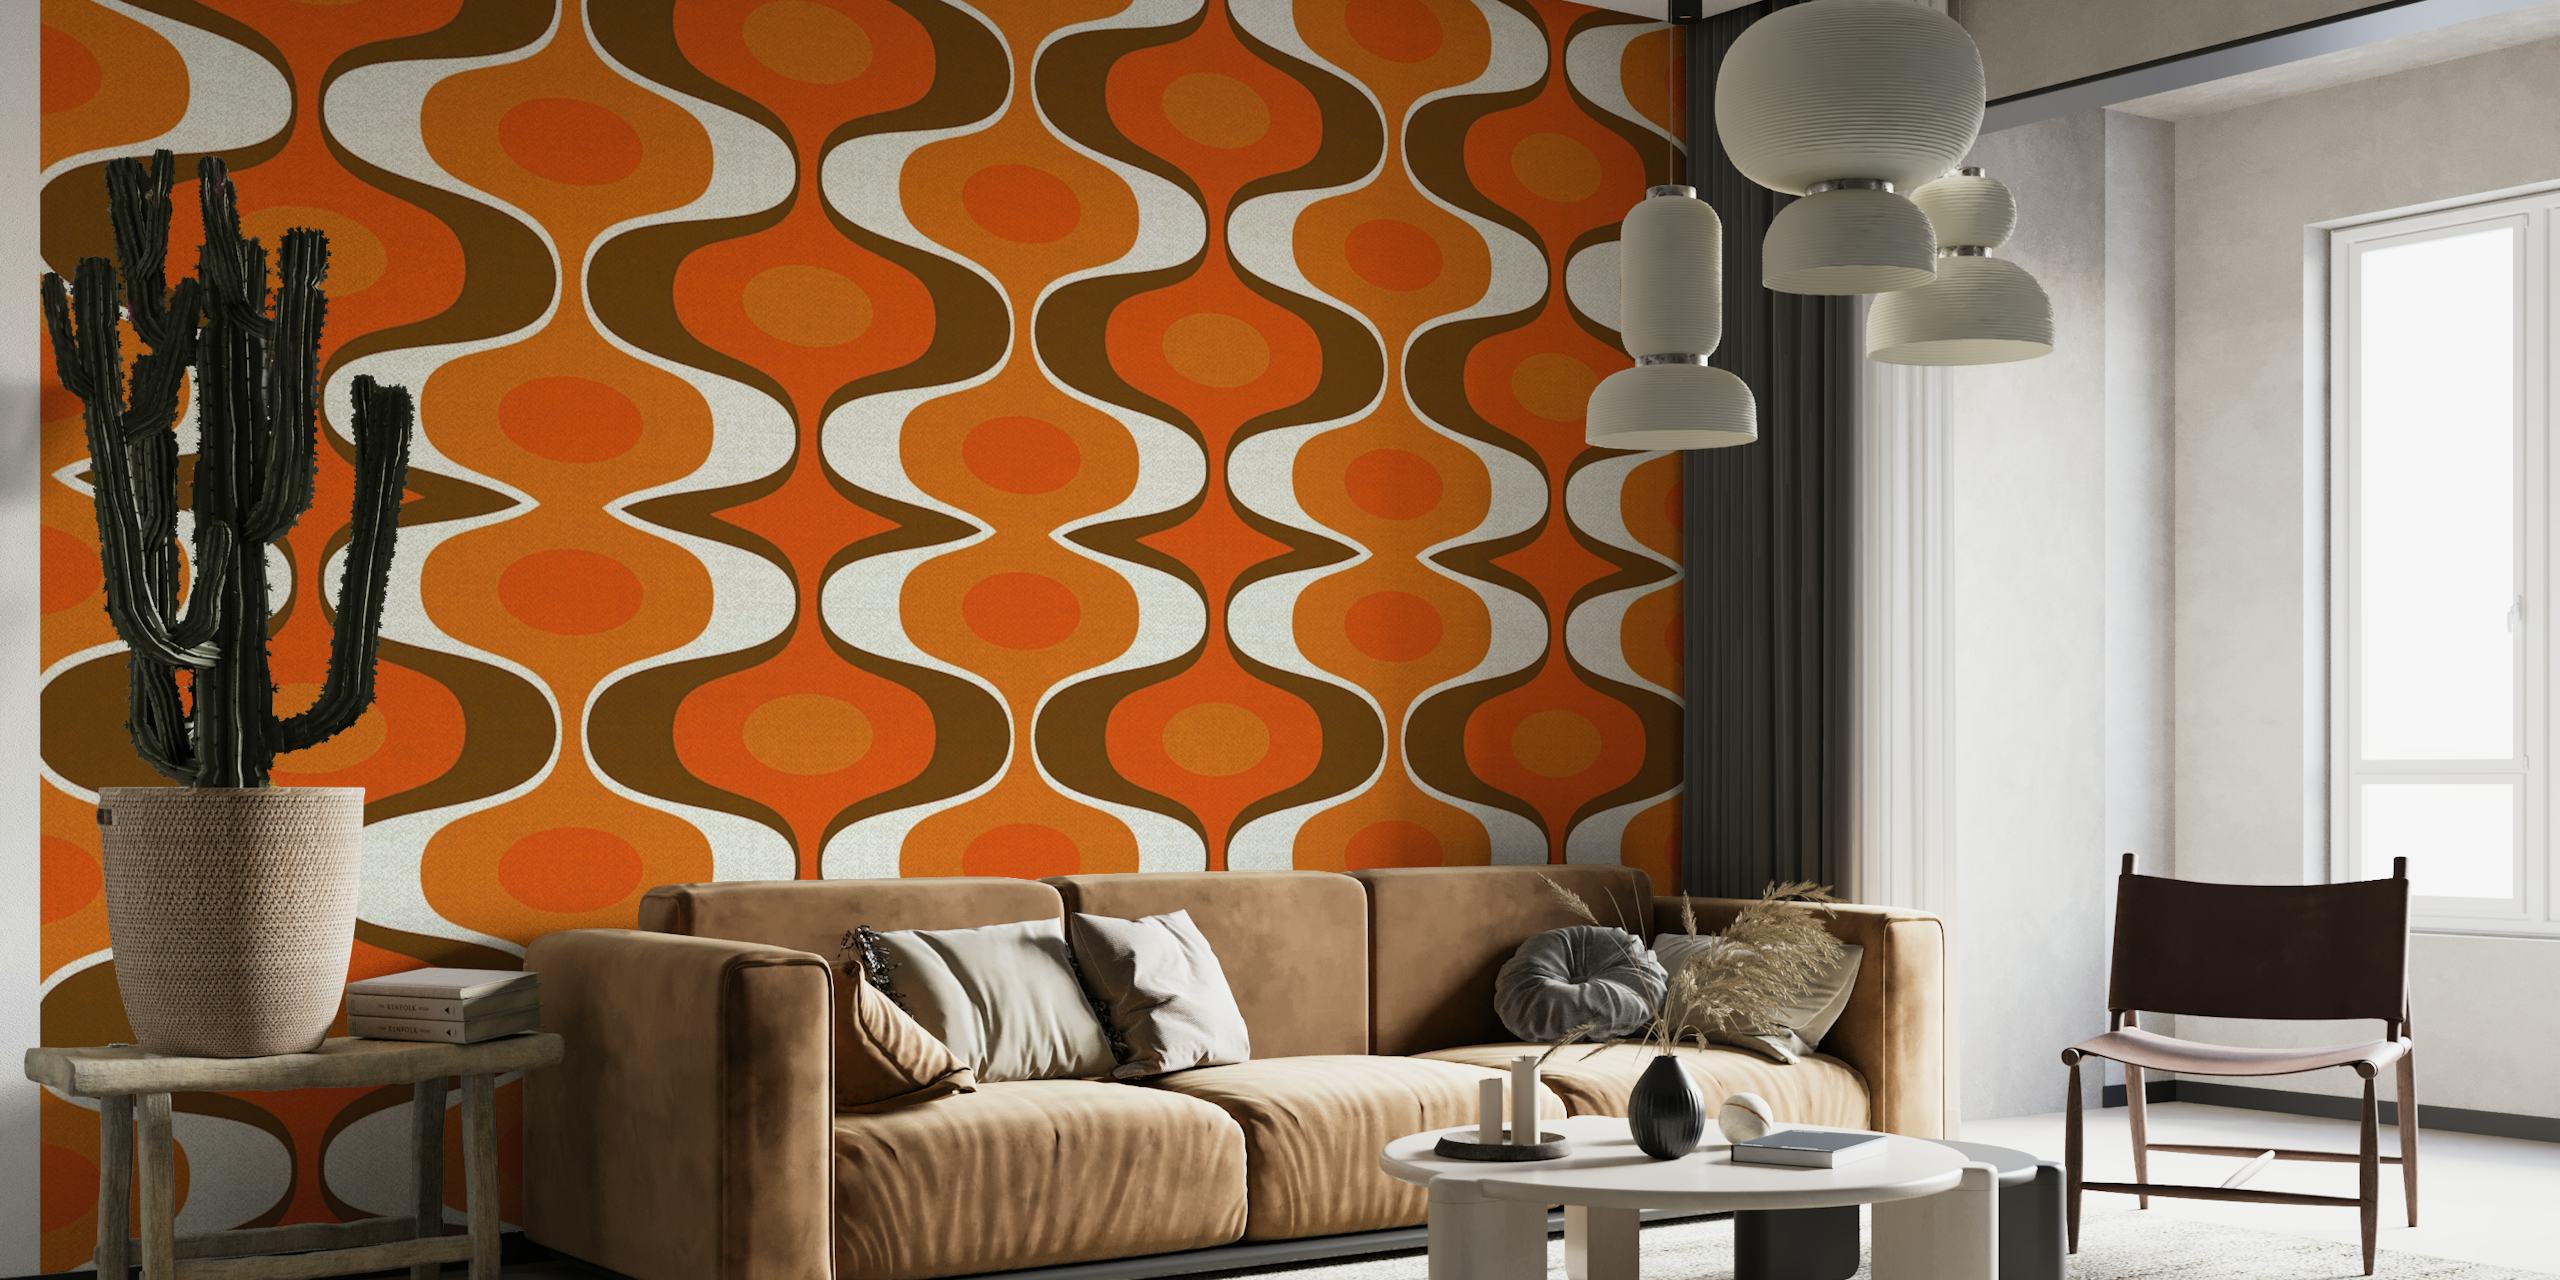 Mural de parede de inspiração vintage com um padrão retrô dos anos 70 nas cores laranja e marrom.